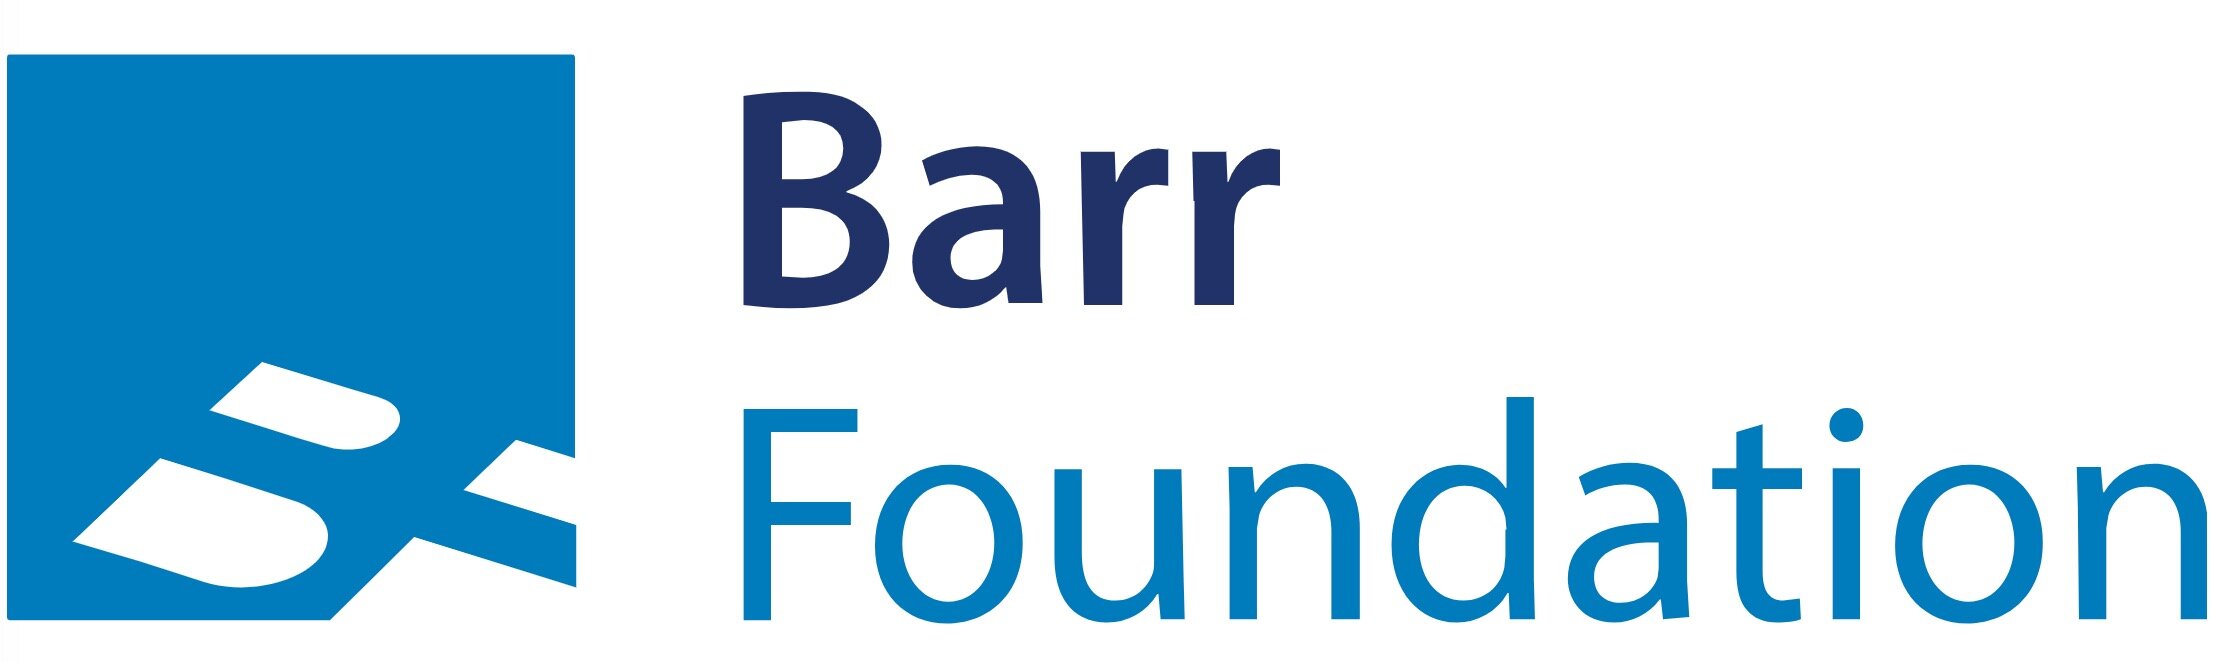 BarrFoundation-logo(New).jpg